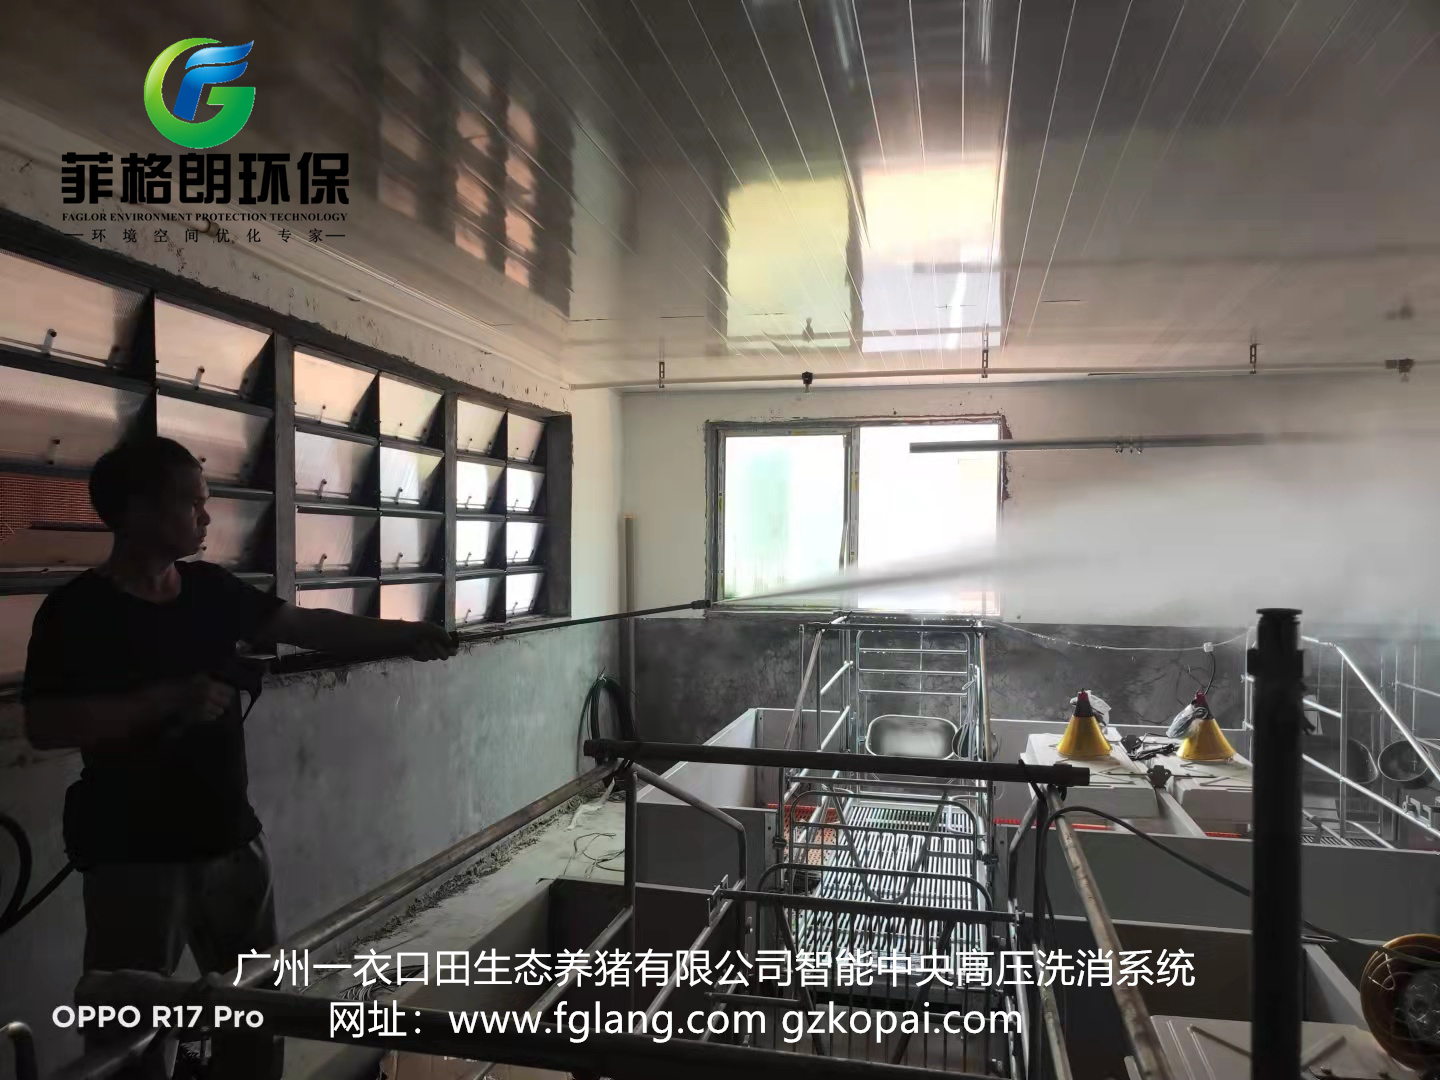 广州一衣口田生态养猪有限公司采用菲格朗智能高压洗消系统